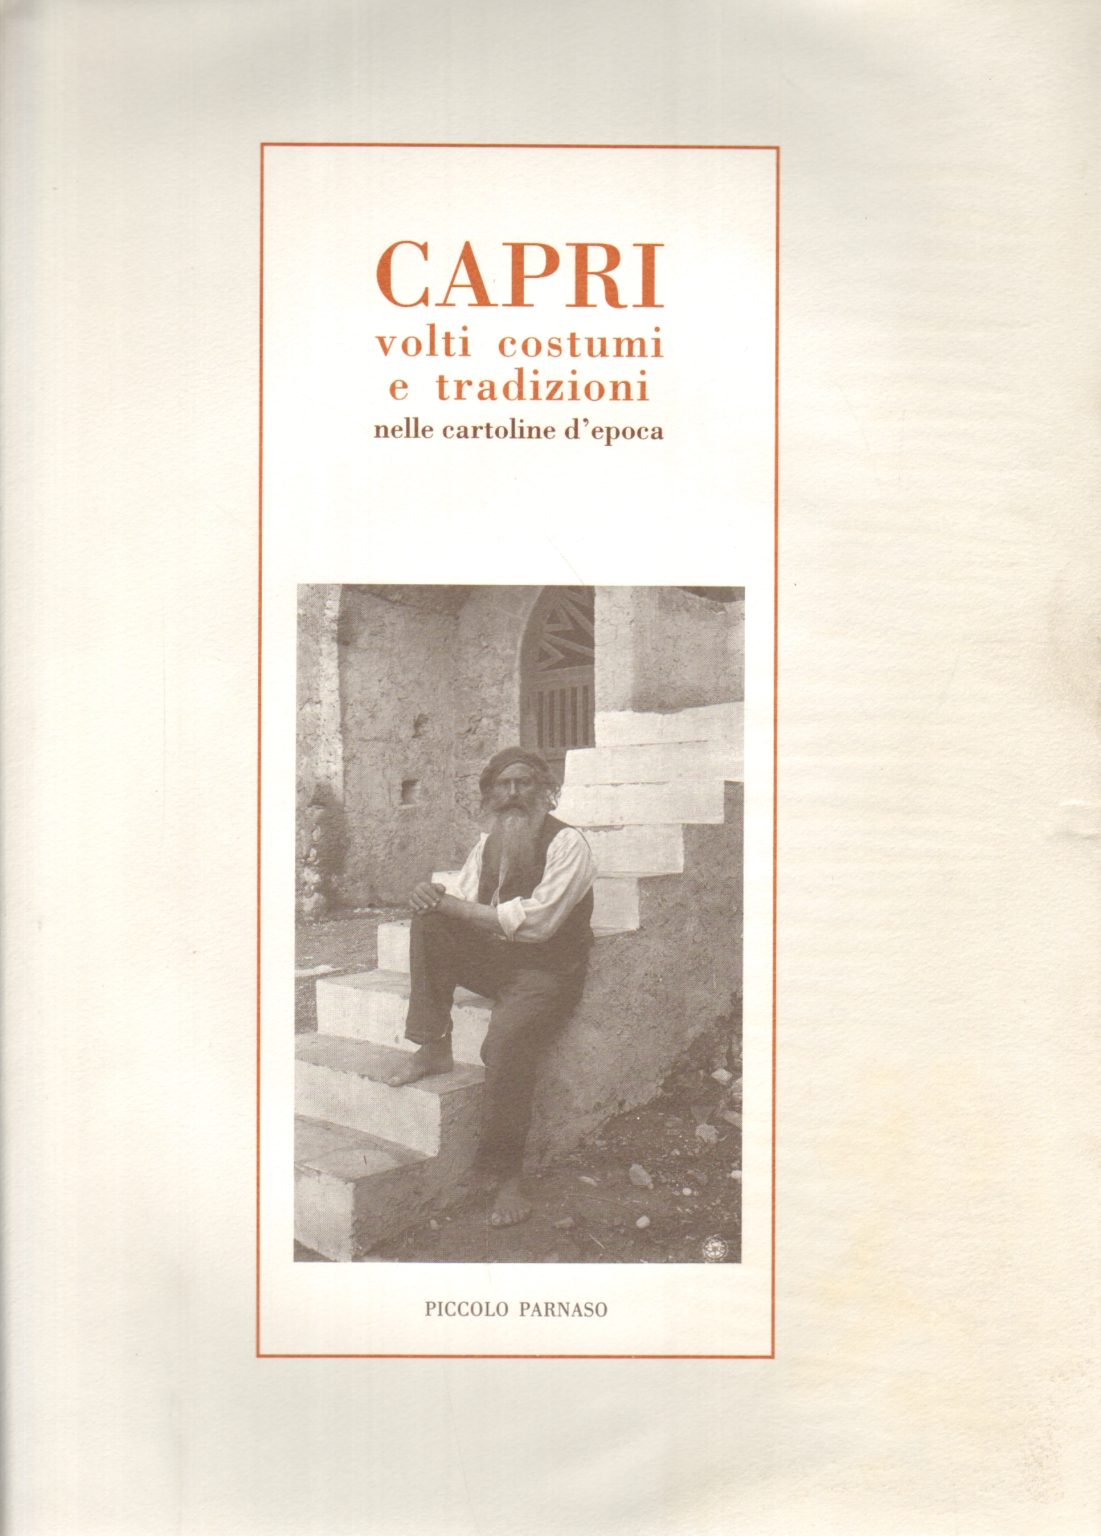 Capri volti costumi e tradizioni , Giovanni Schettino